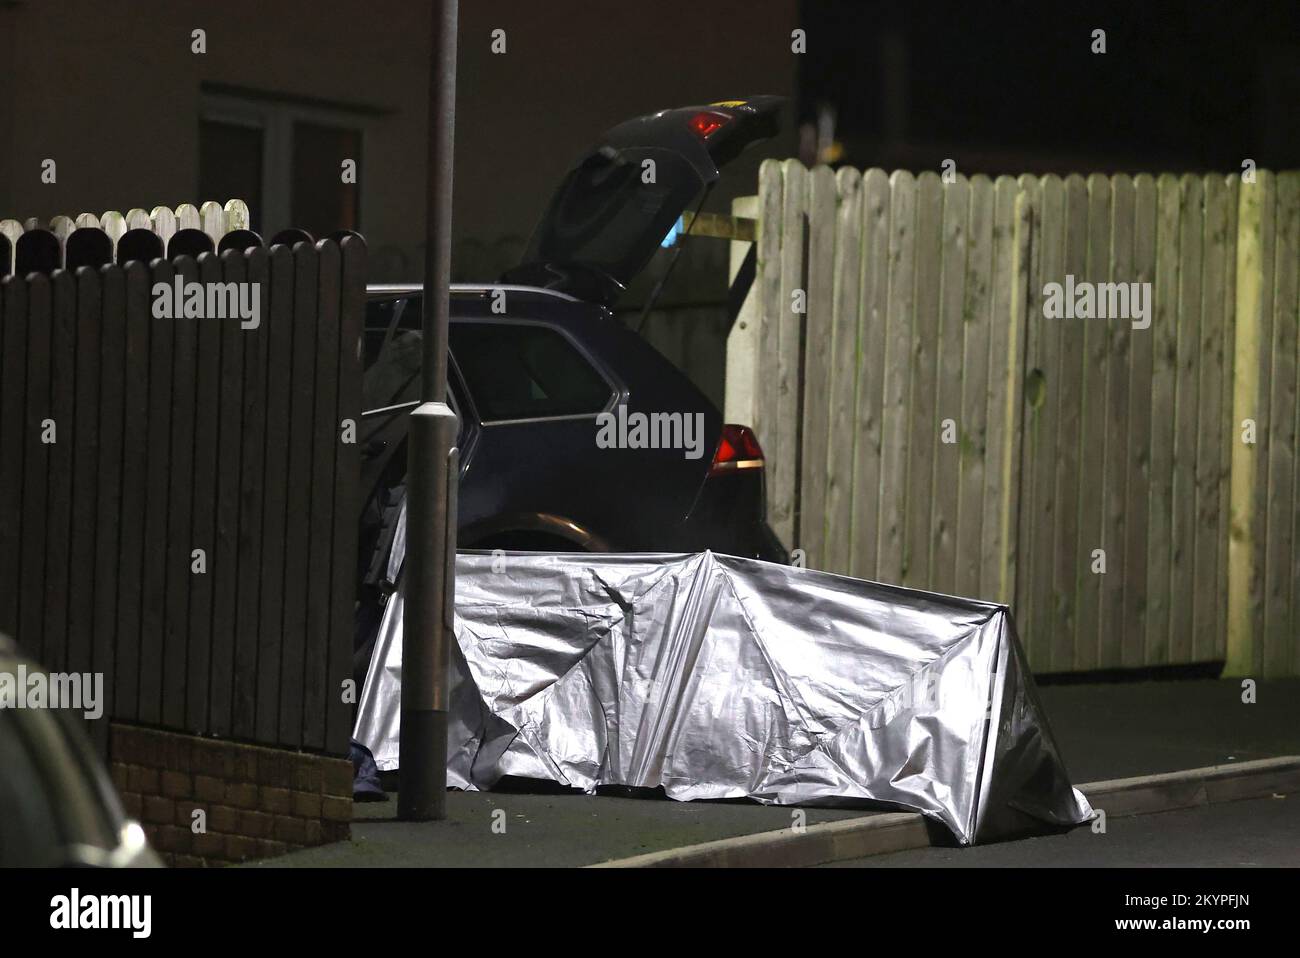 Una tenda eretta accanto ad un'auto sulla scena di un tiro fatale nella zona del Parco Ardcarn di Newry il giovedì sera in cui un uomo è morto. Foto Stock